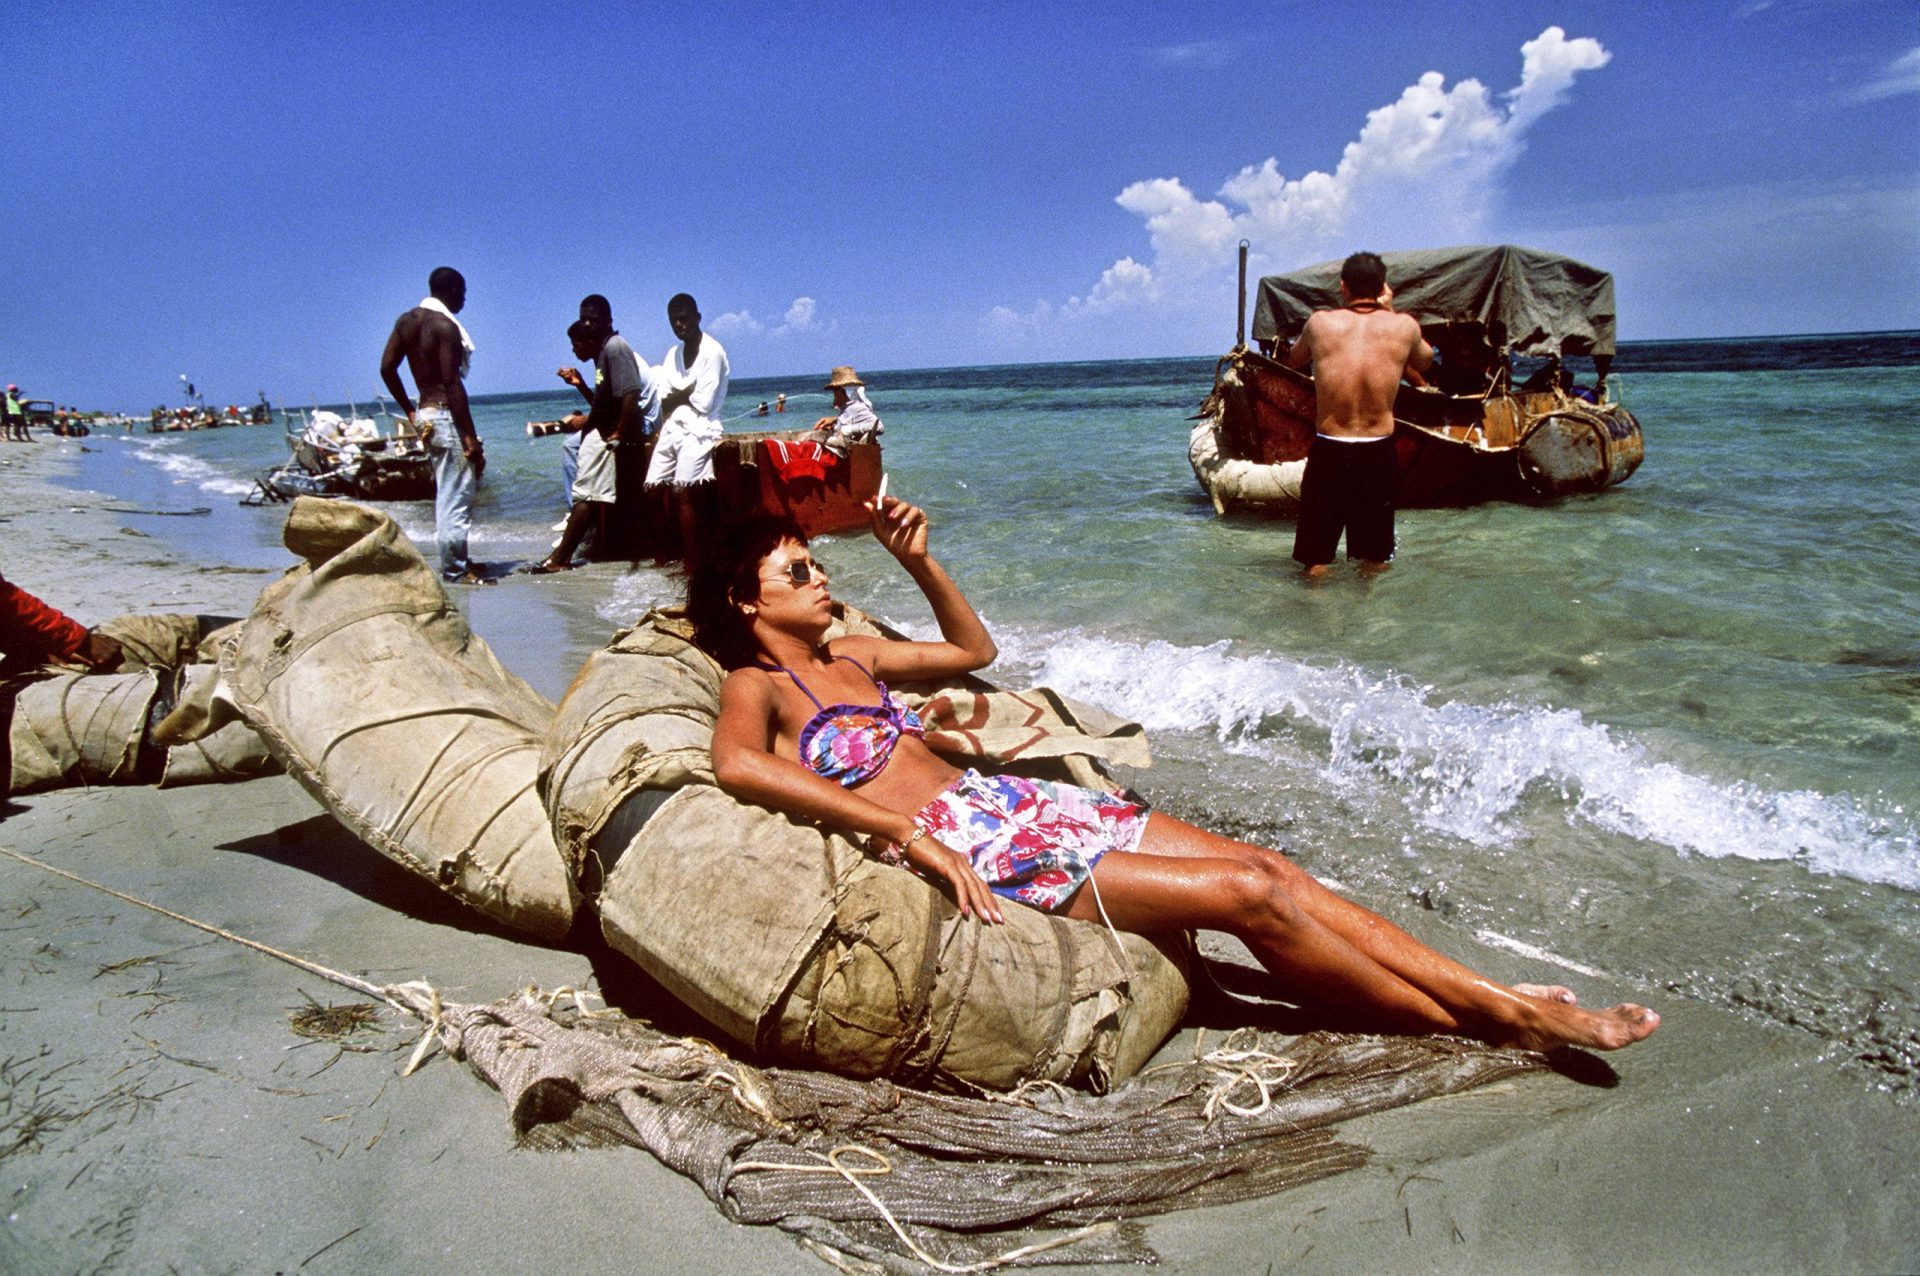 Balsero-Krise 1994 in Cuba. Über 35.000 Cubaner fliehen auf LKW-Reifen, Flössen etc von Cuba in die USA| Bildquelle: © Sven Creutzmann | Bilder sind in der Regel urheberrechtlich geschützt